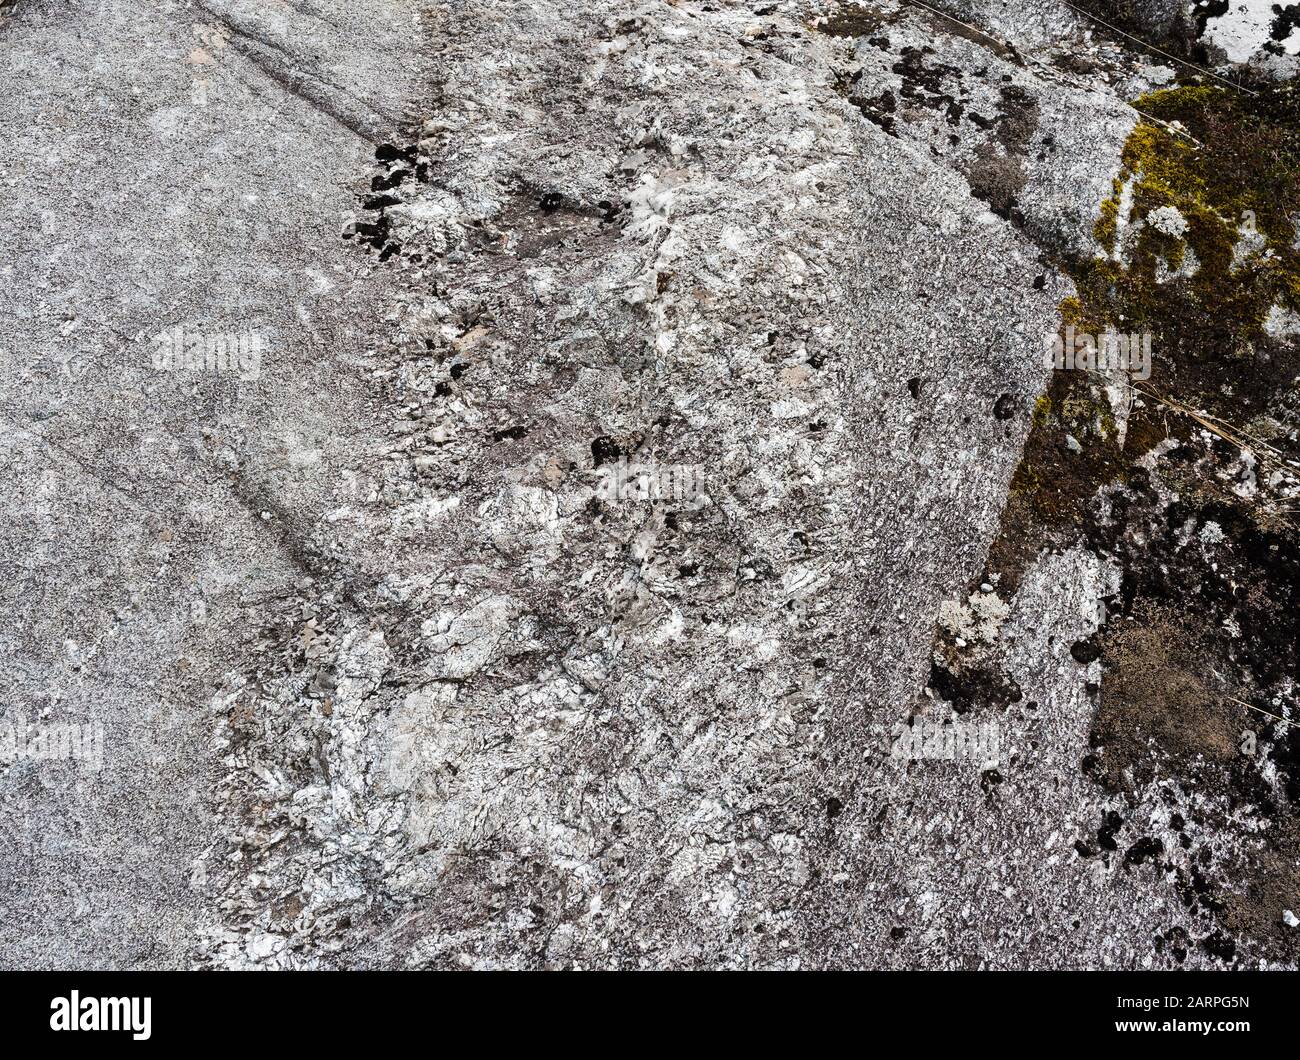 Dettaglio della Granite Dongegal principale nella Poison Glen, County Donegal, Irlanda, che mostra complesse relazioni di intrusione ignee e texture di deformazione Foto Stock